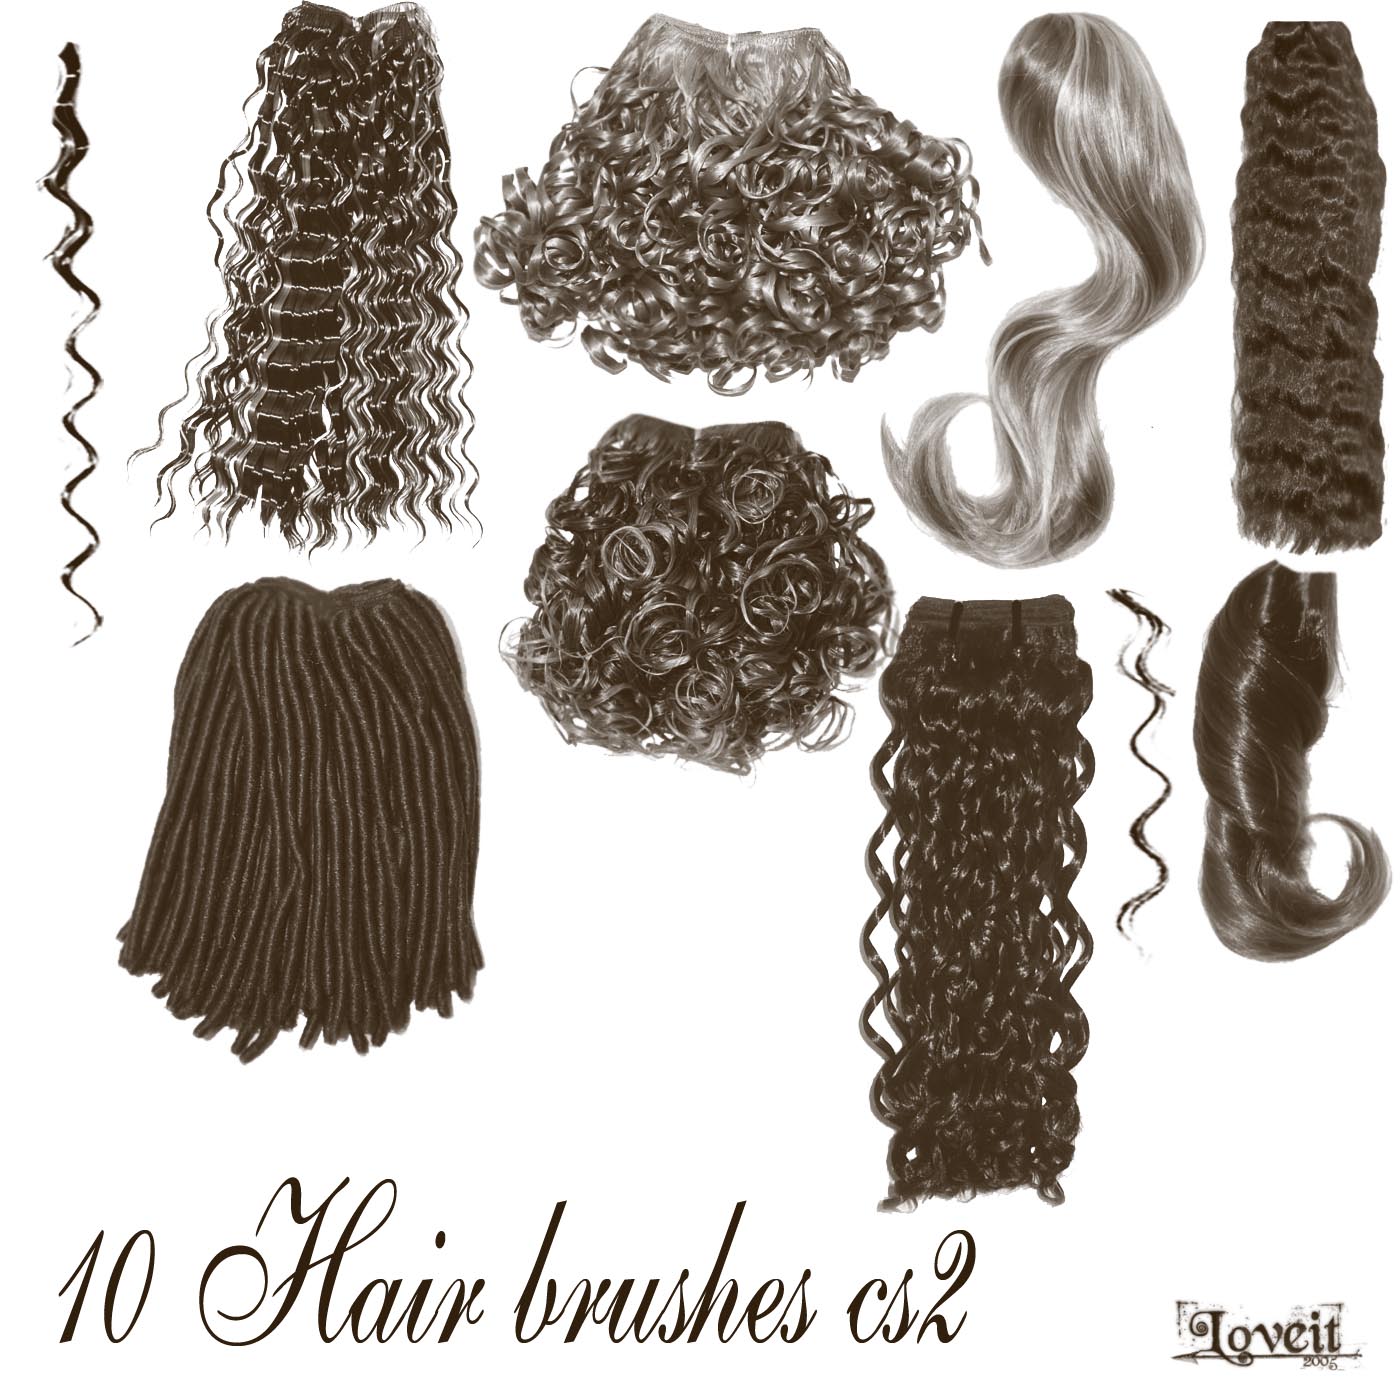 10 hair brushes cs2